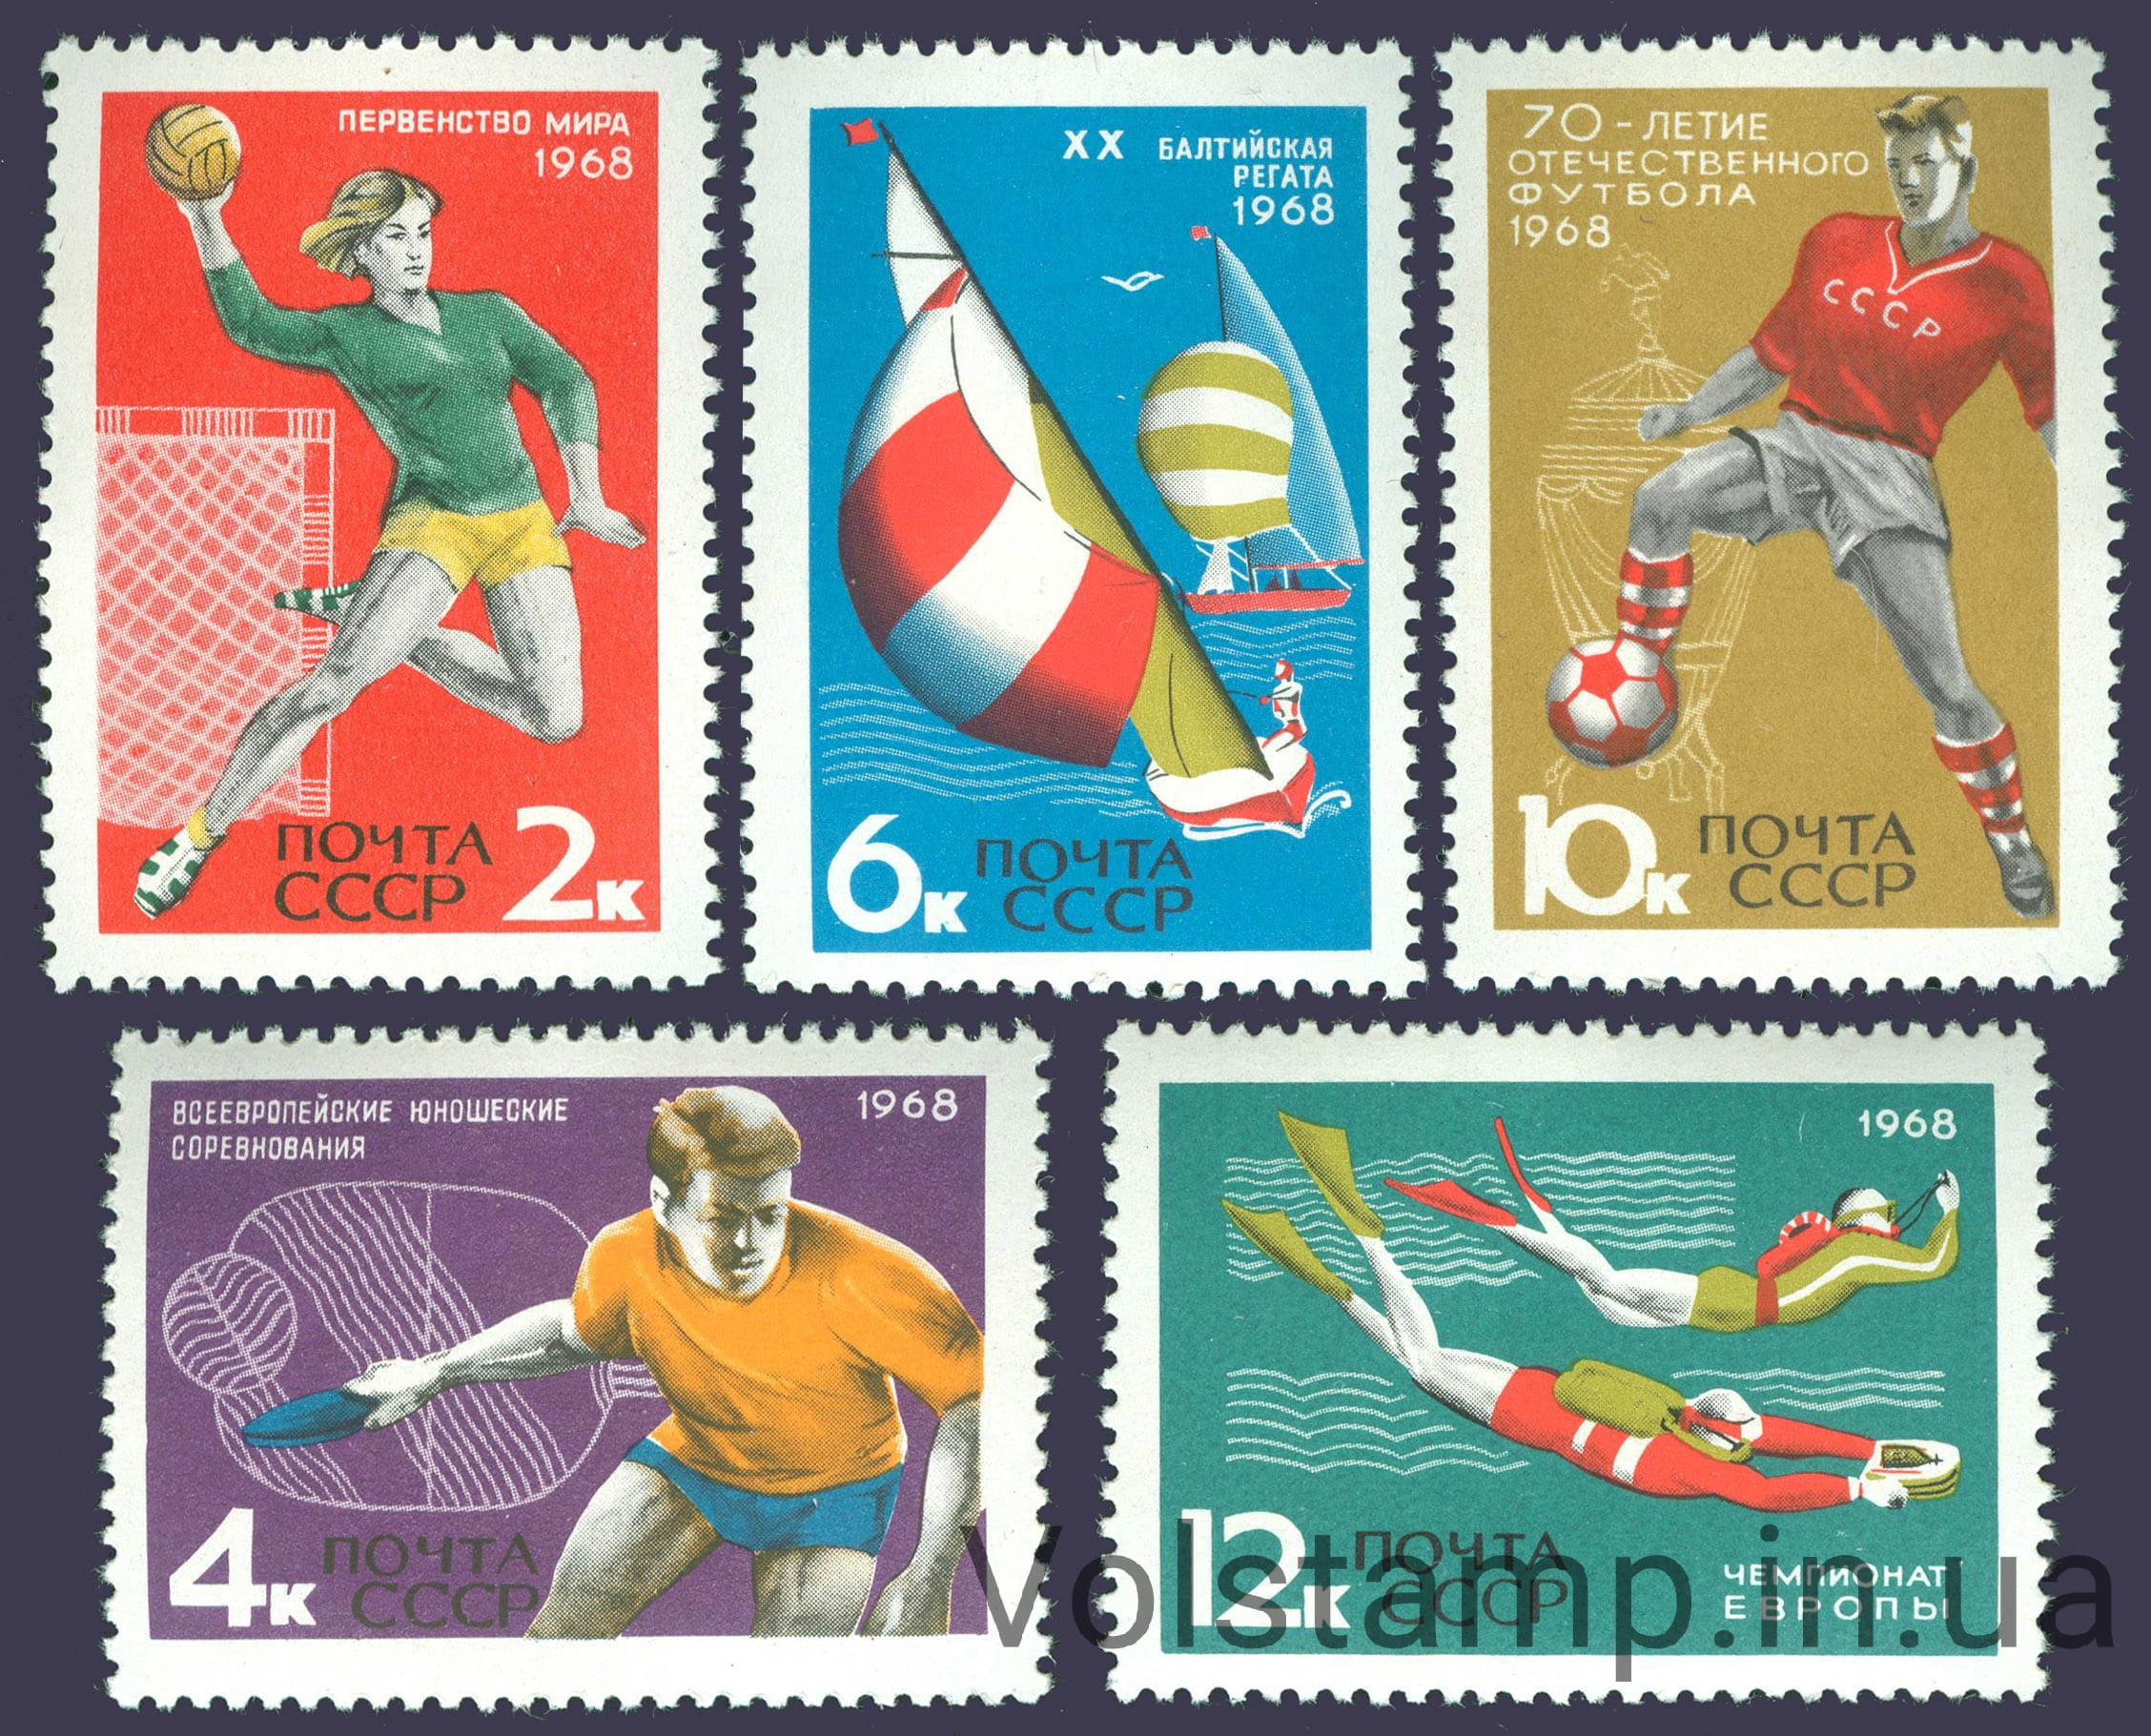 1968 серия марок Международные спортивные соревнования года №3561-3565